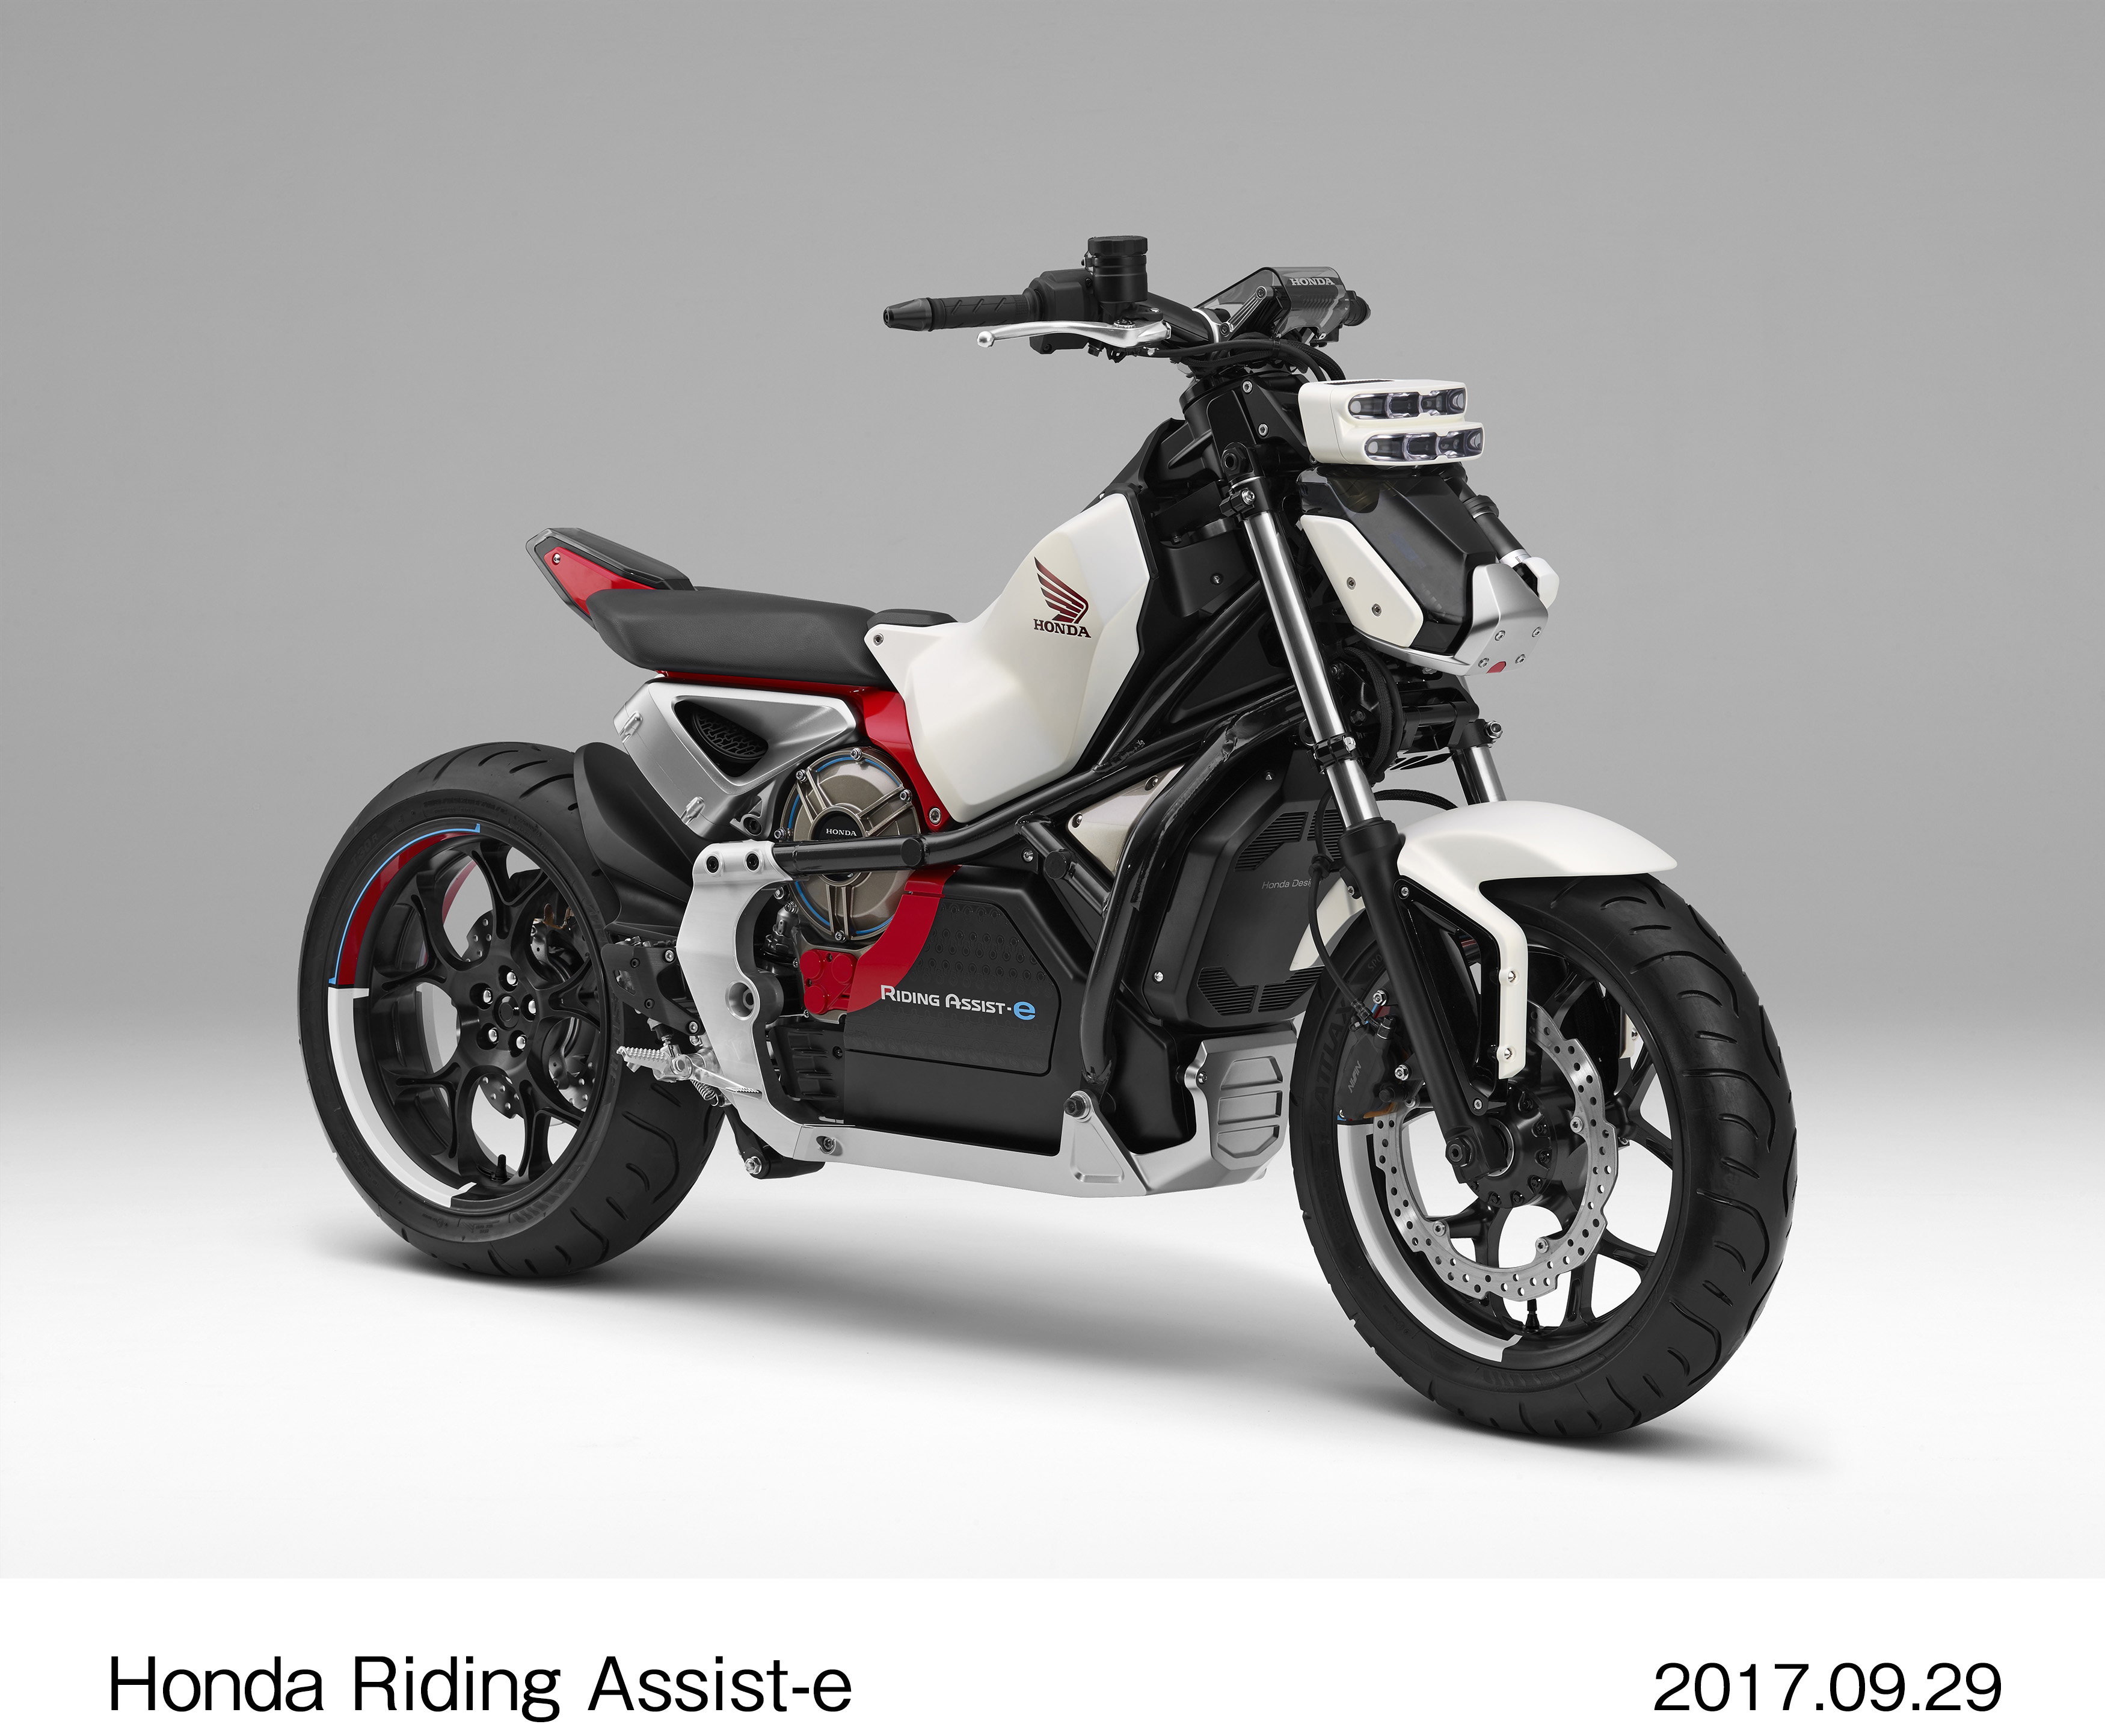 ฮอนด้า เตรียมเปิดตัวรถจักรยานยนต์ Honda Riding Assist-e